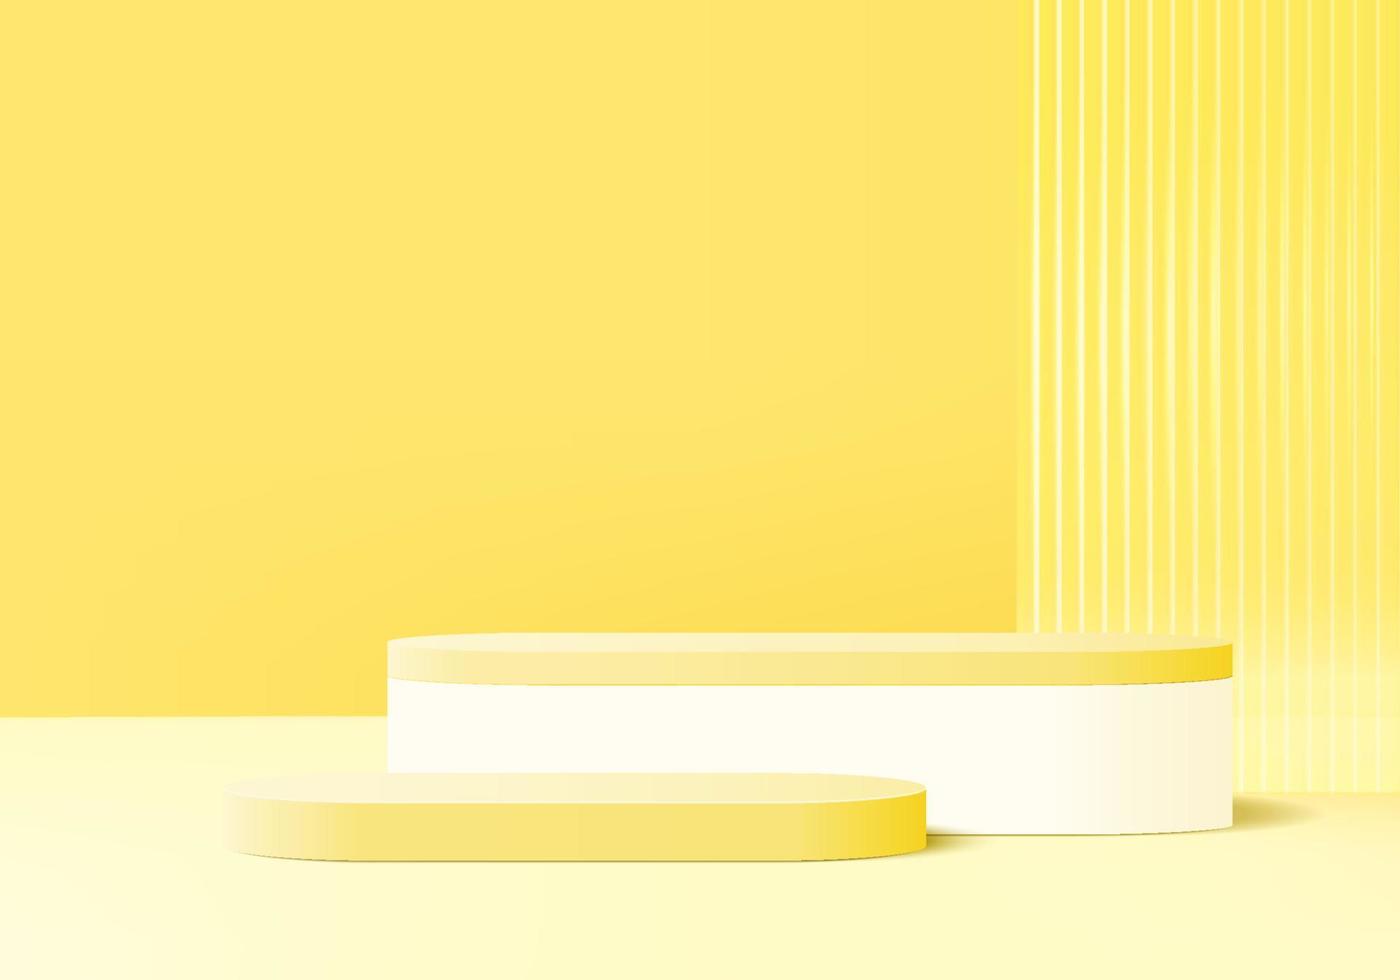 Plataforma de plano de fundo de exibição de produto 3D com luz amarela de parede de vidro moderna. plataforma do pódio de renderização 3d do vetor do fundo. estande mostrar produto cosmético. vitrine de palco em pedestal moderno estúdio de luz